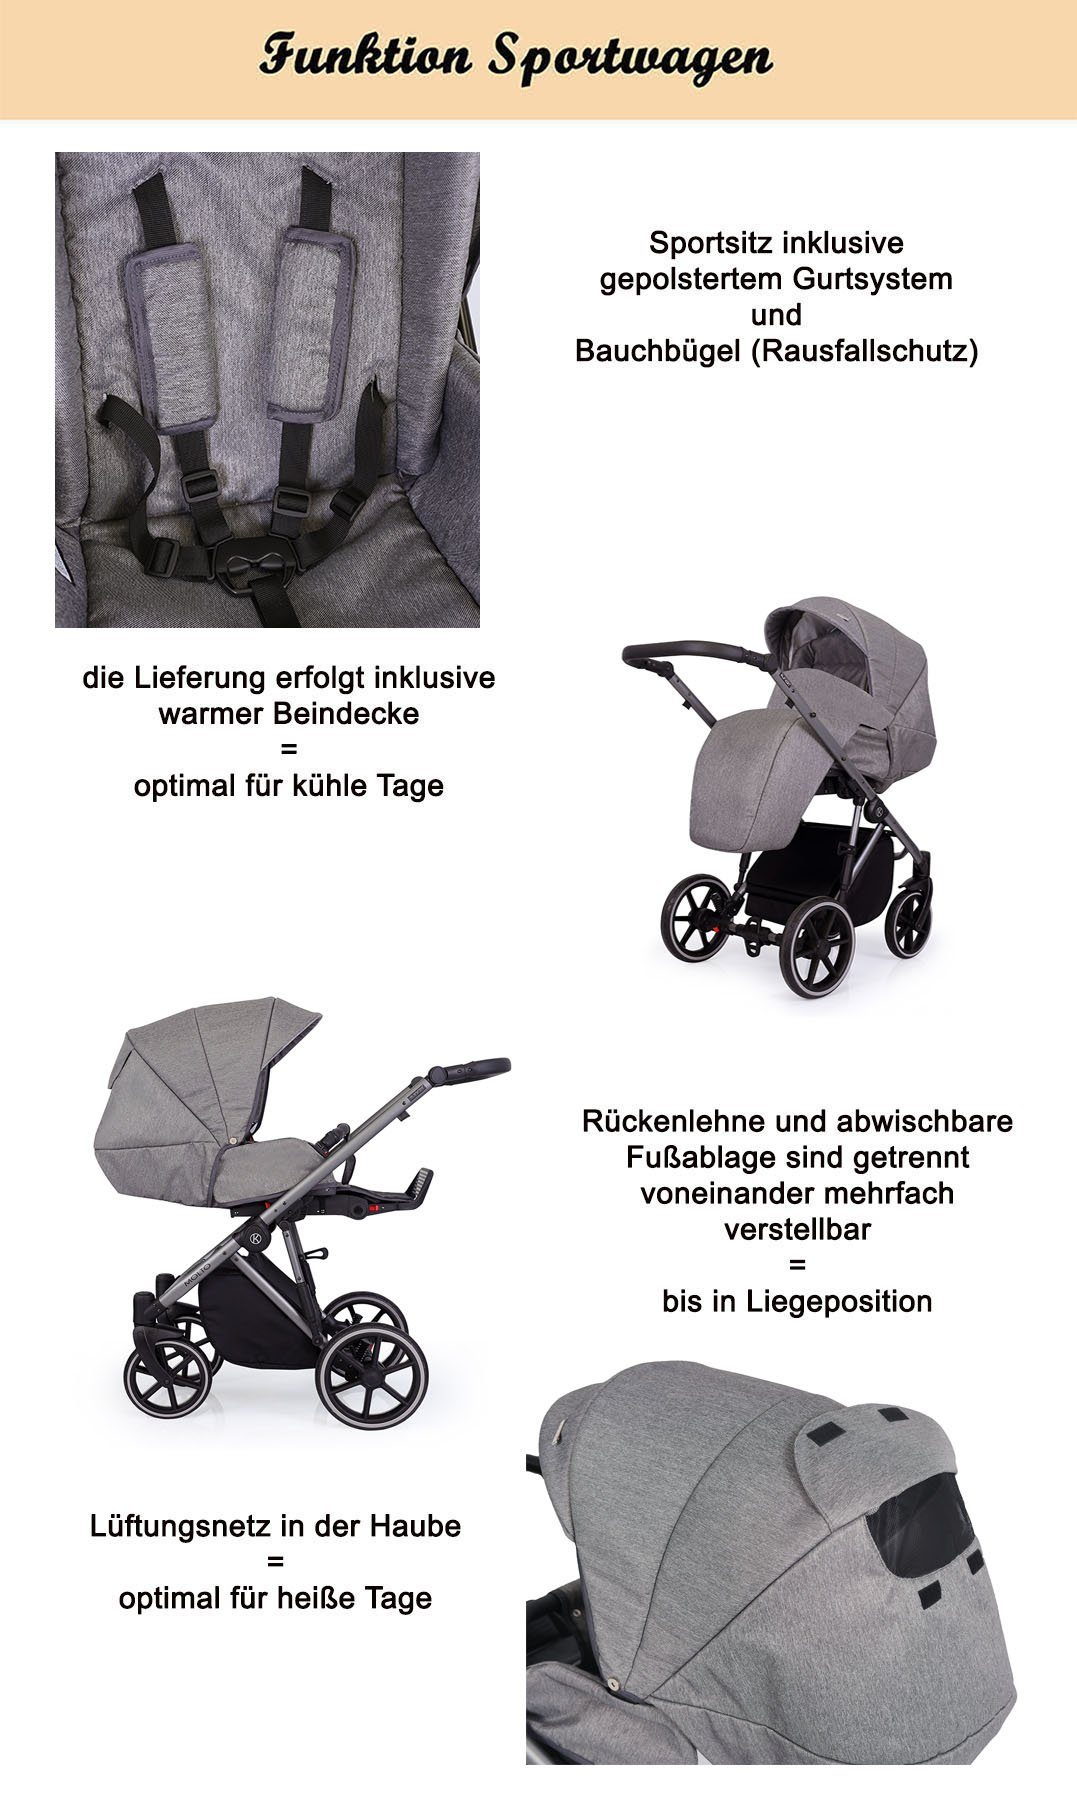 babies-on-wheels Kombi-Kinderwagen Molto Gold-Edition 12 von Geburt Teile 1 4 Jahre Grau = - Gestell 2 bis - gold in